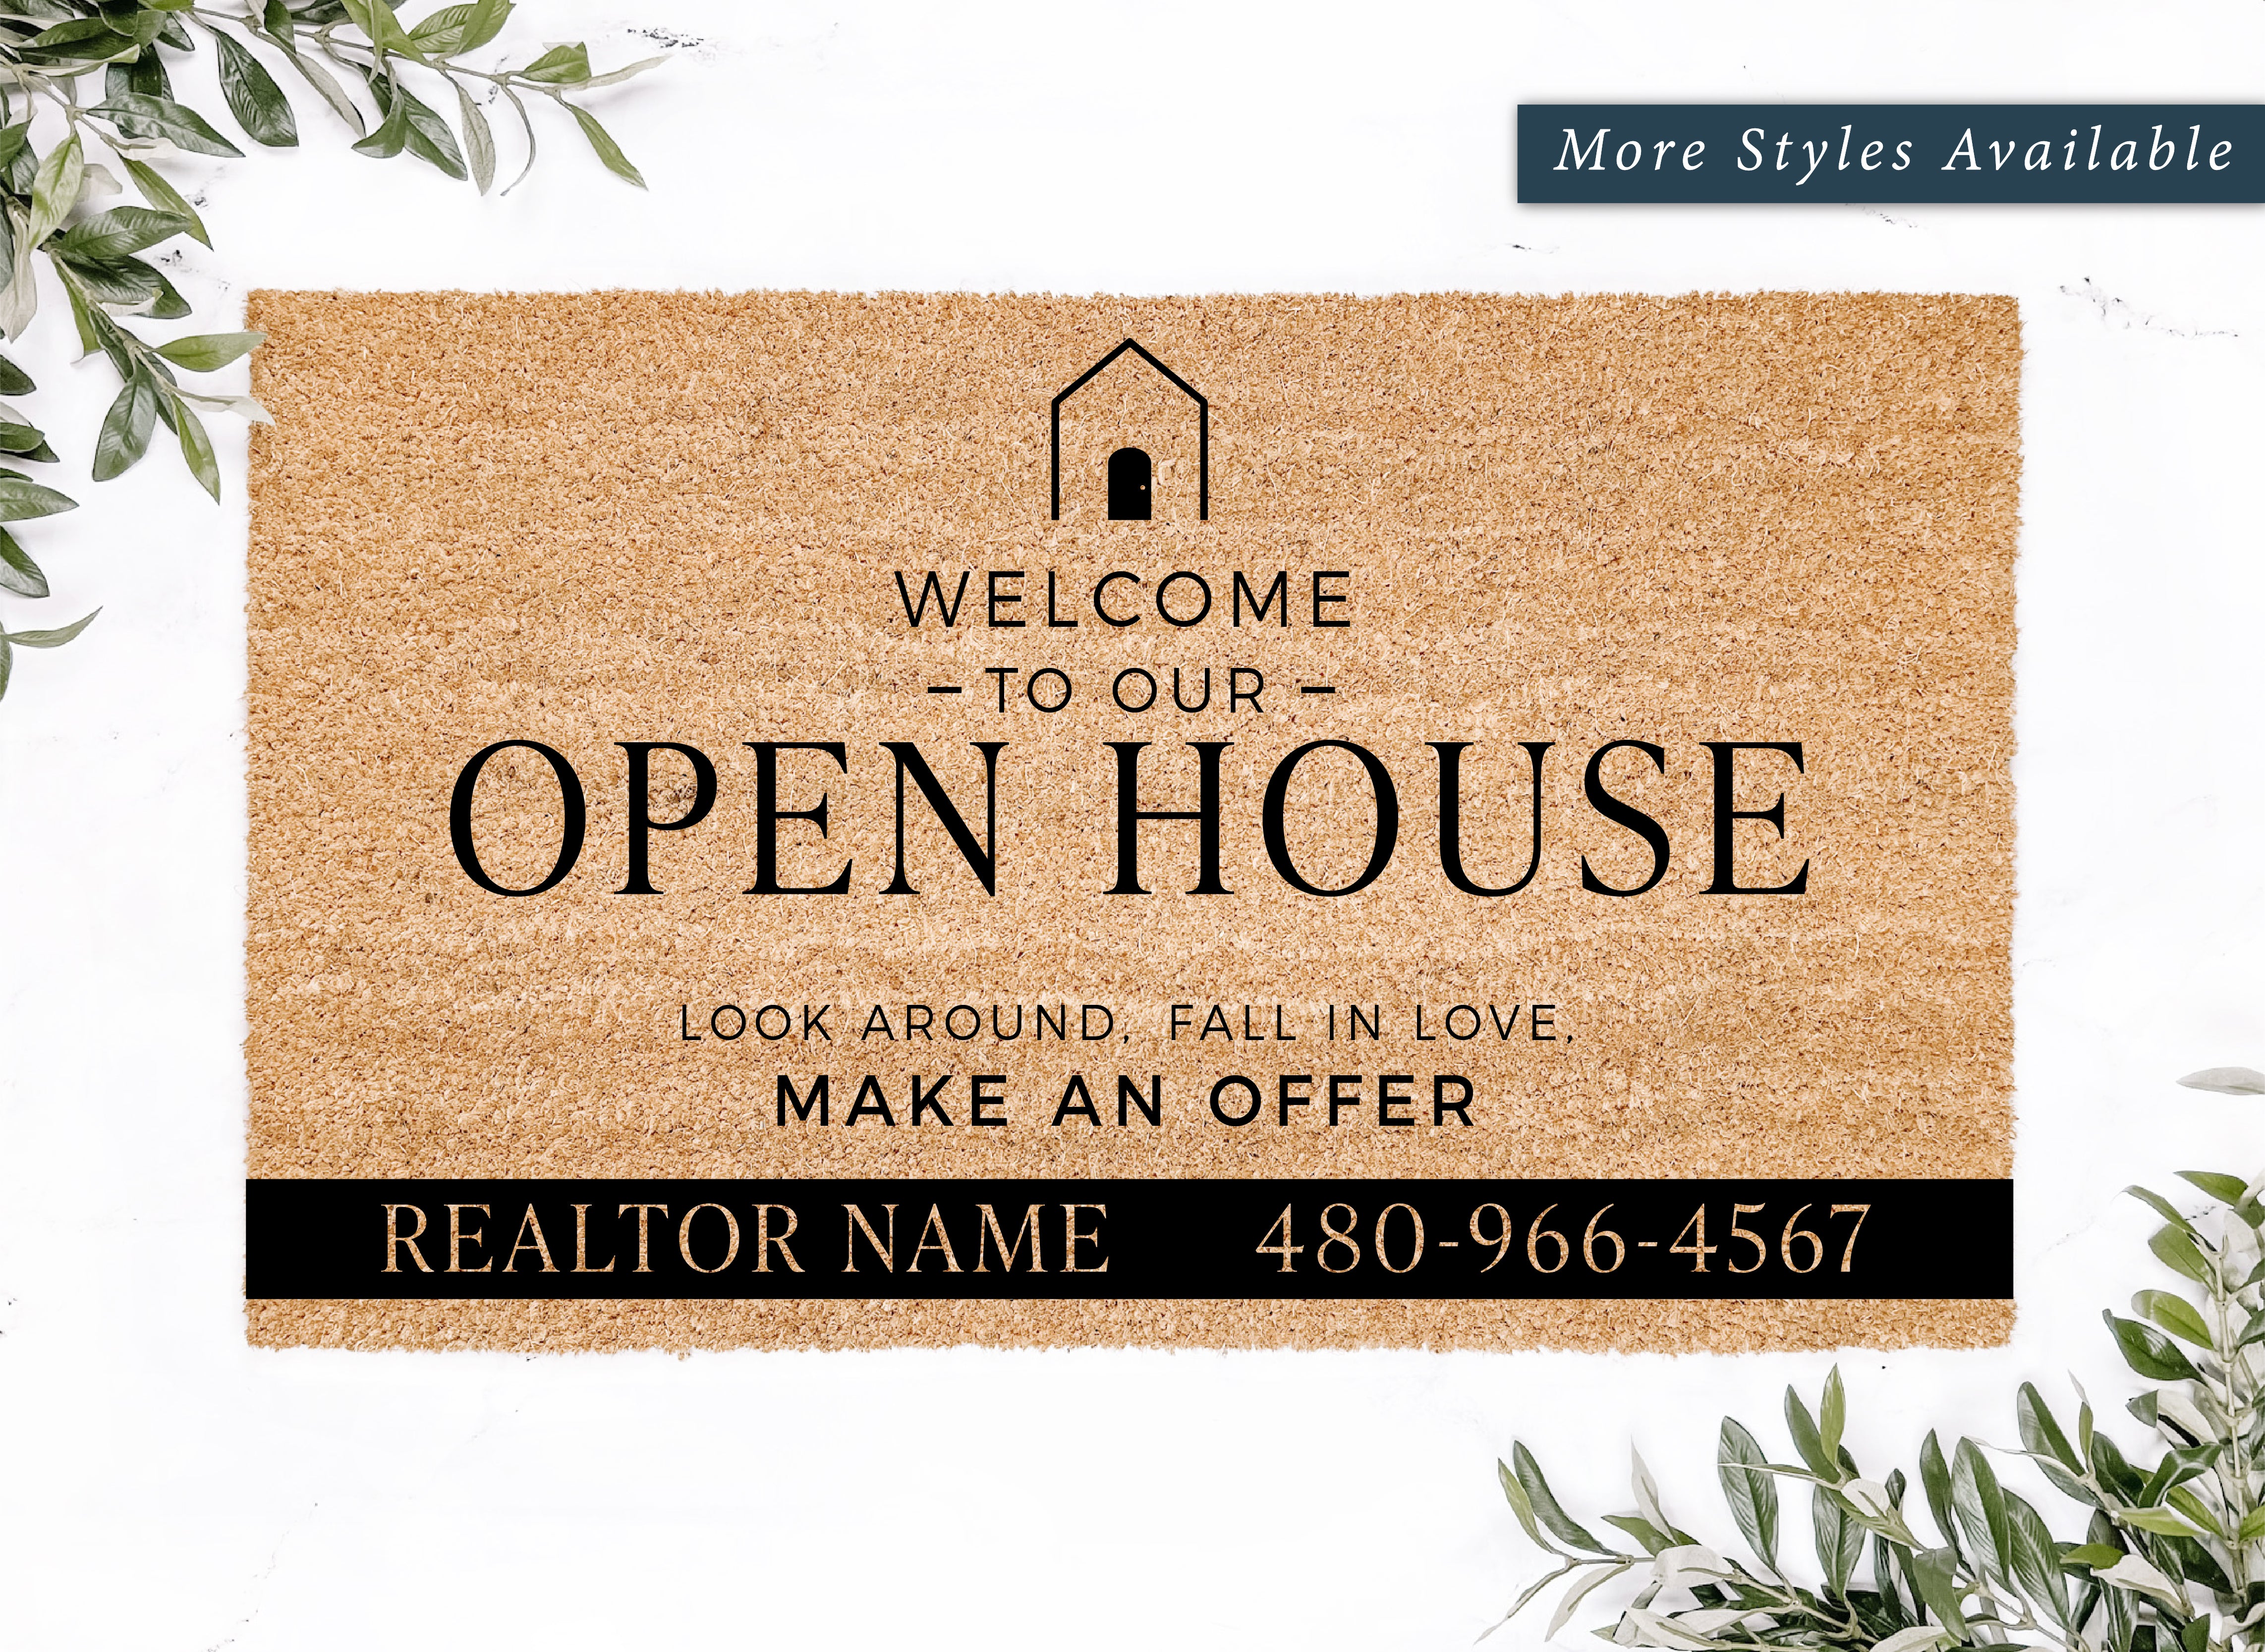 Open House Realtor Information Doormat